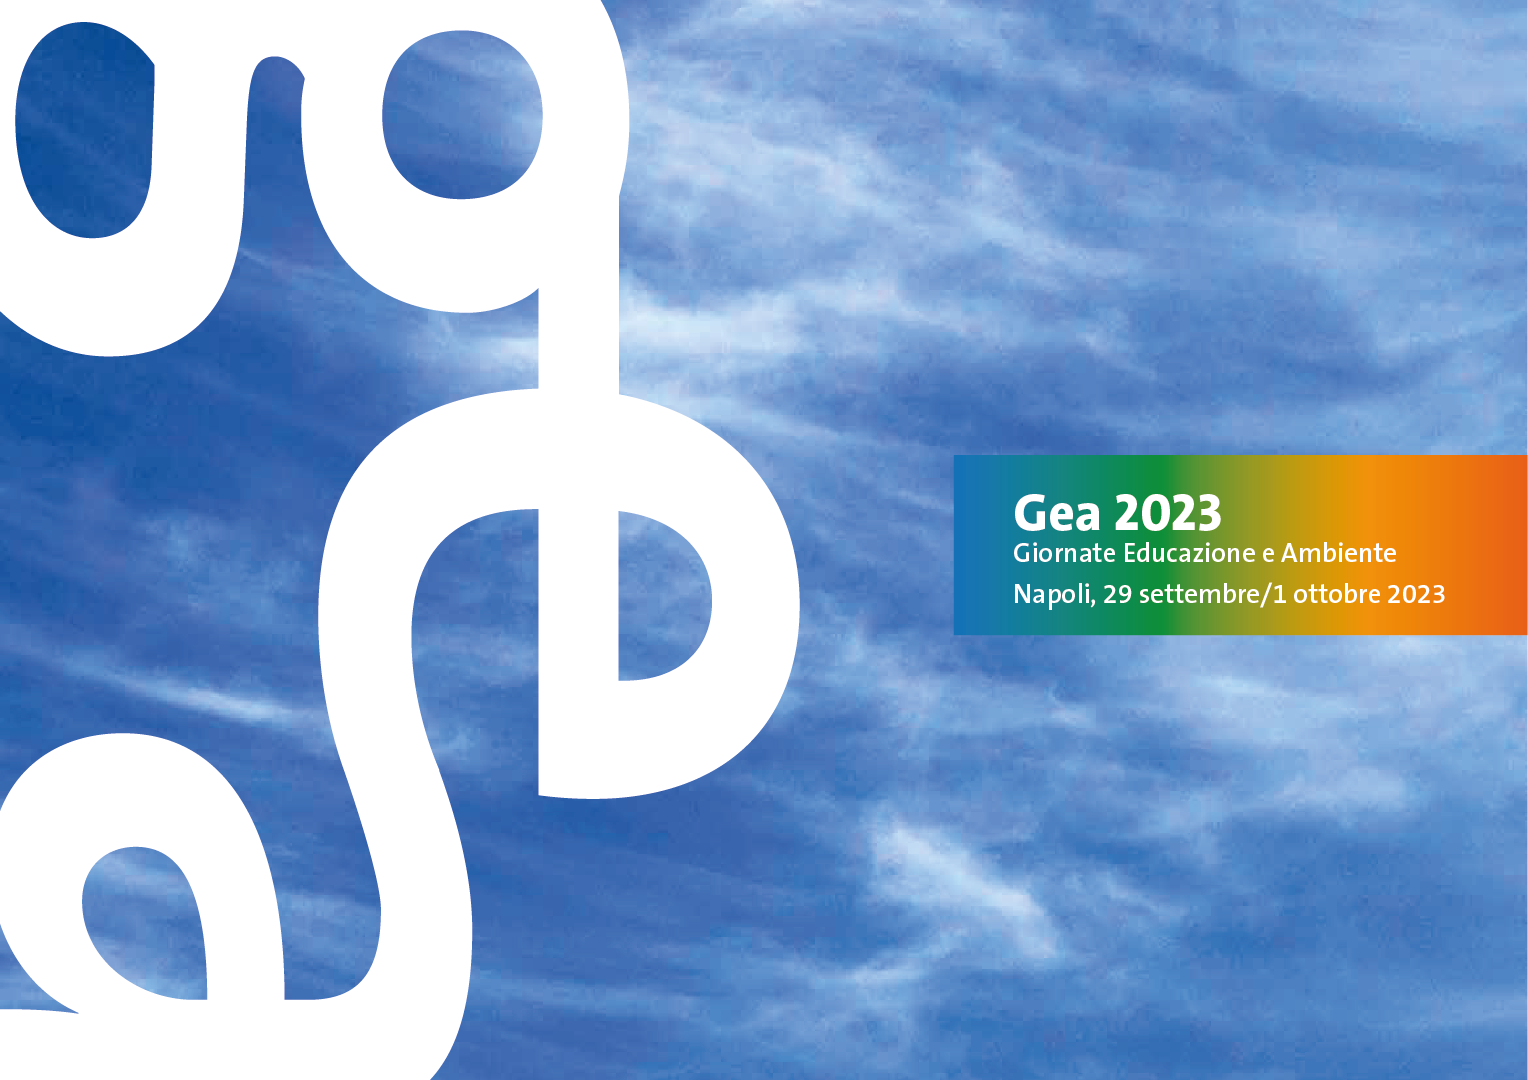 GEA 2023 - Giornate Educazione Ambiente